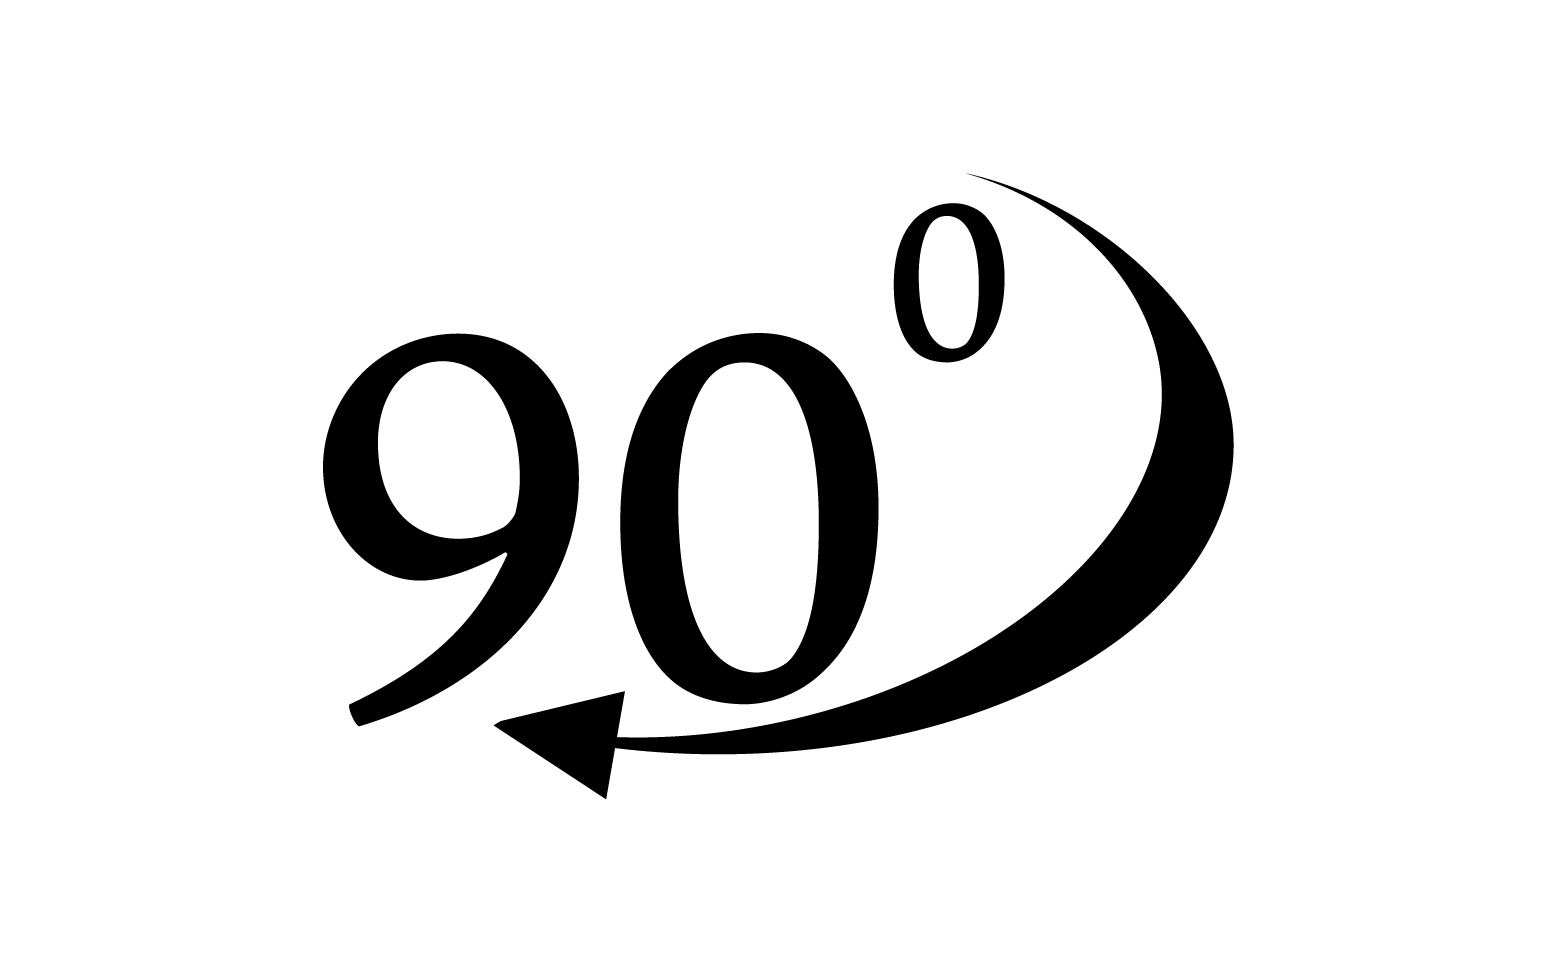 90 degree angle rotation icon symbol logo v58